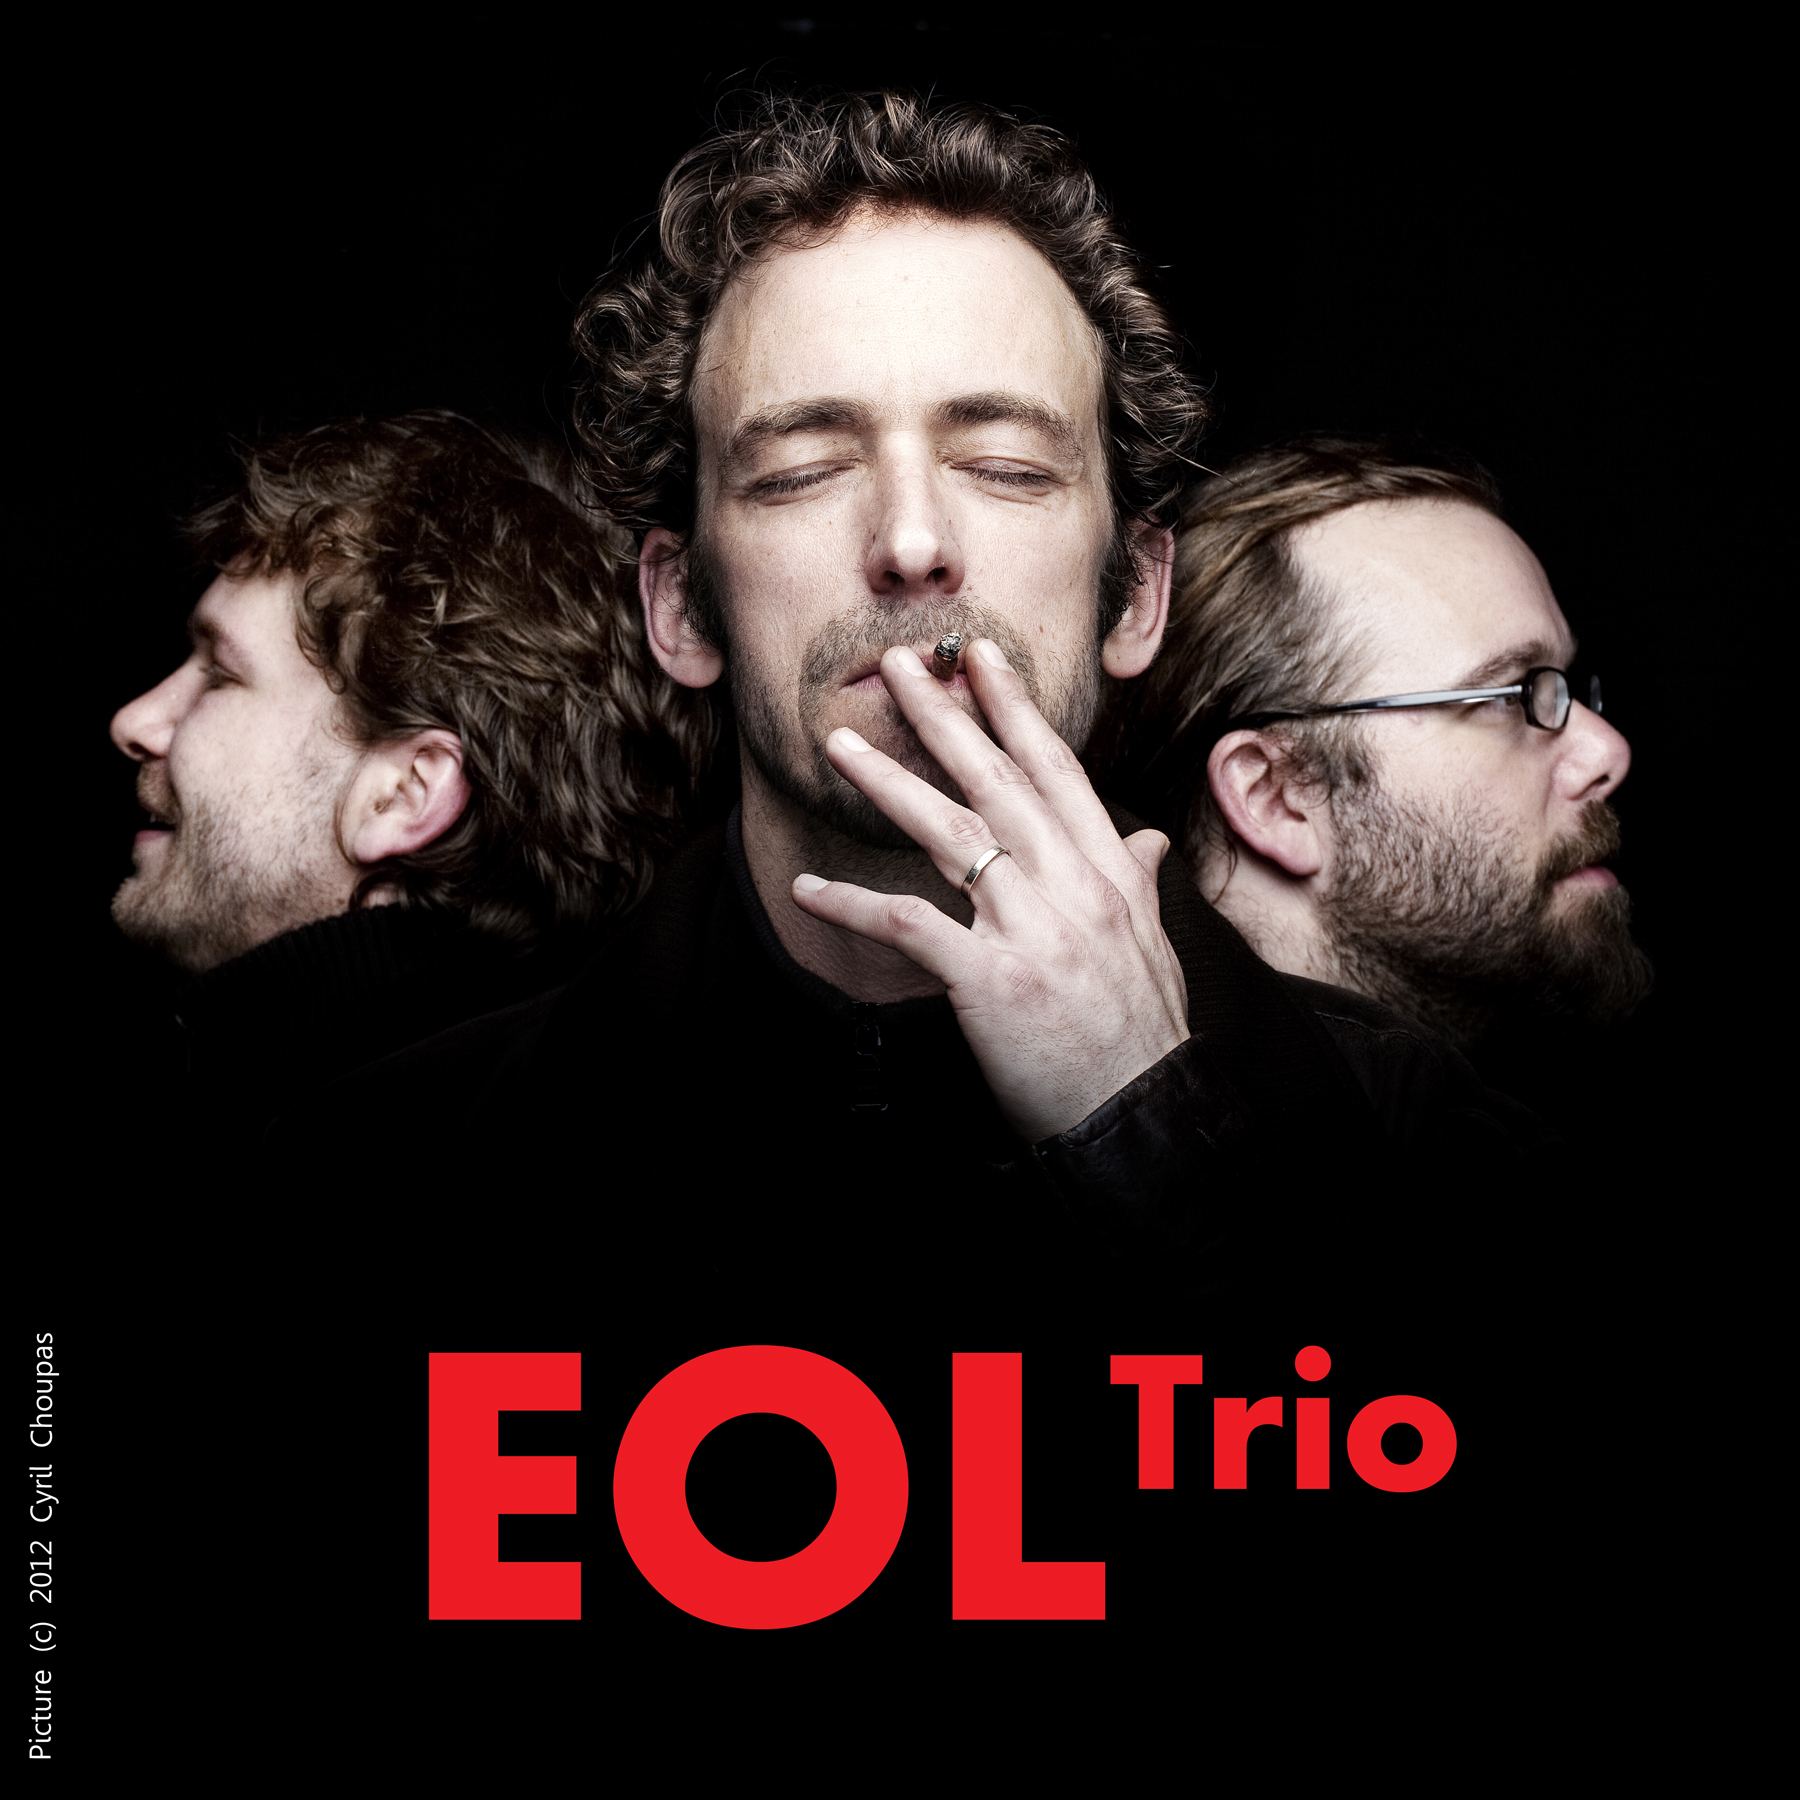 Eol Trio